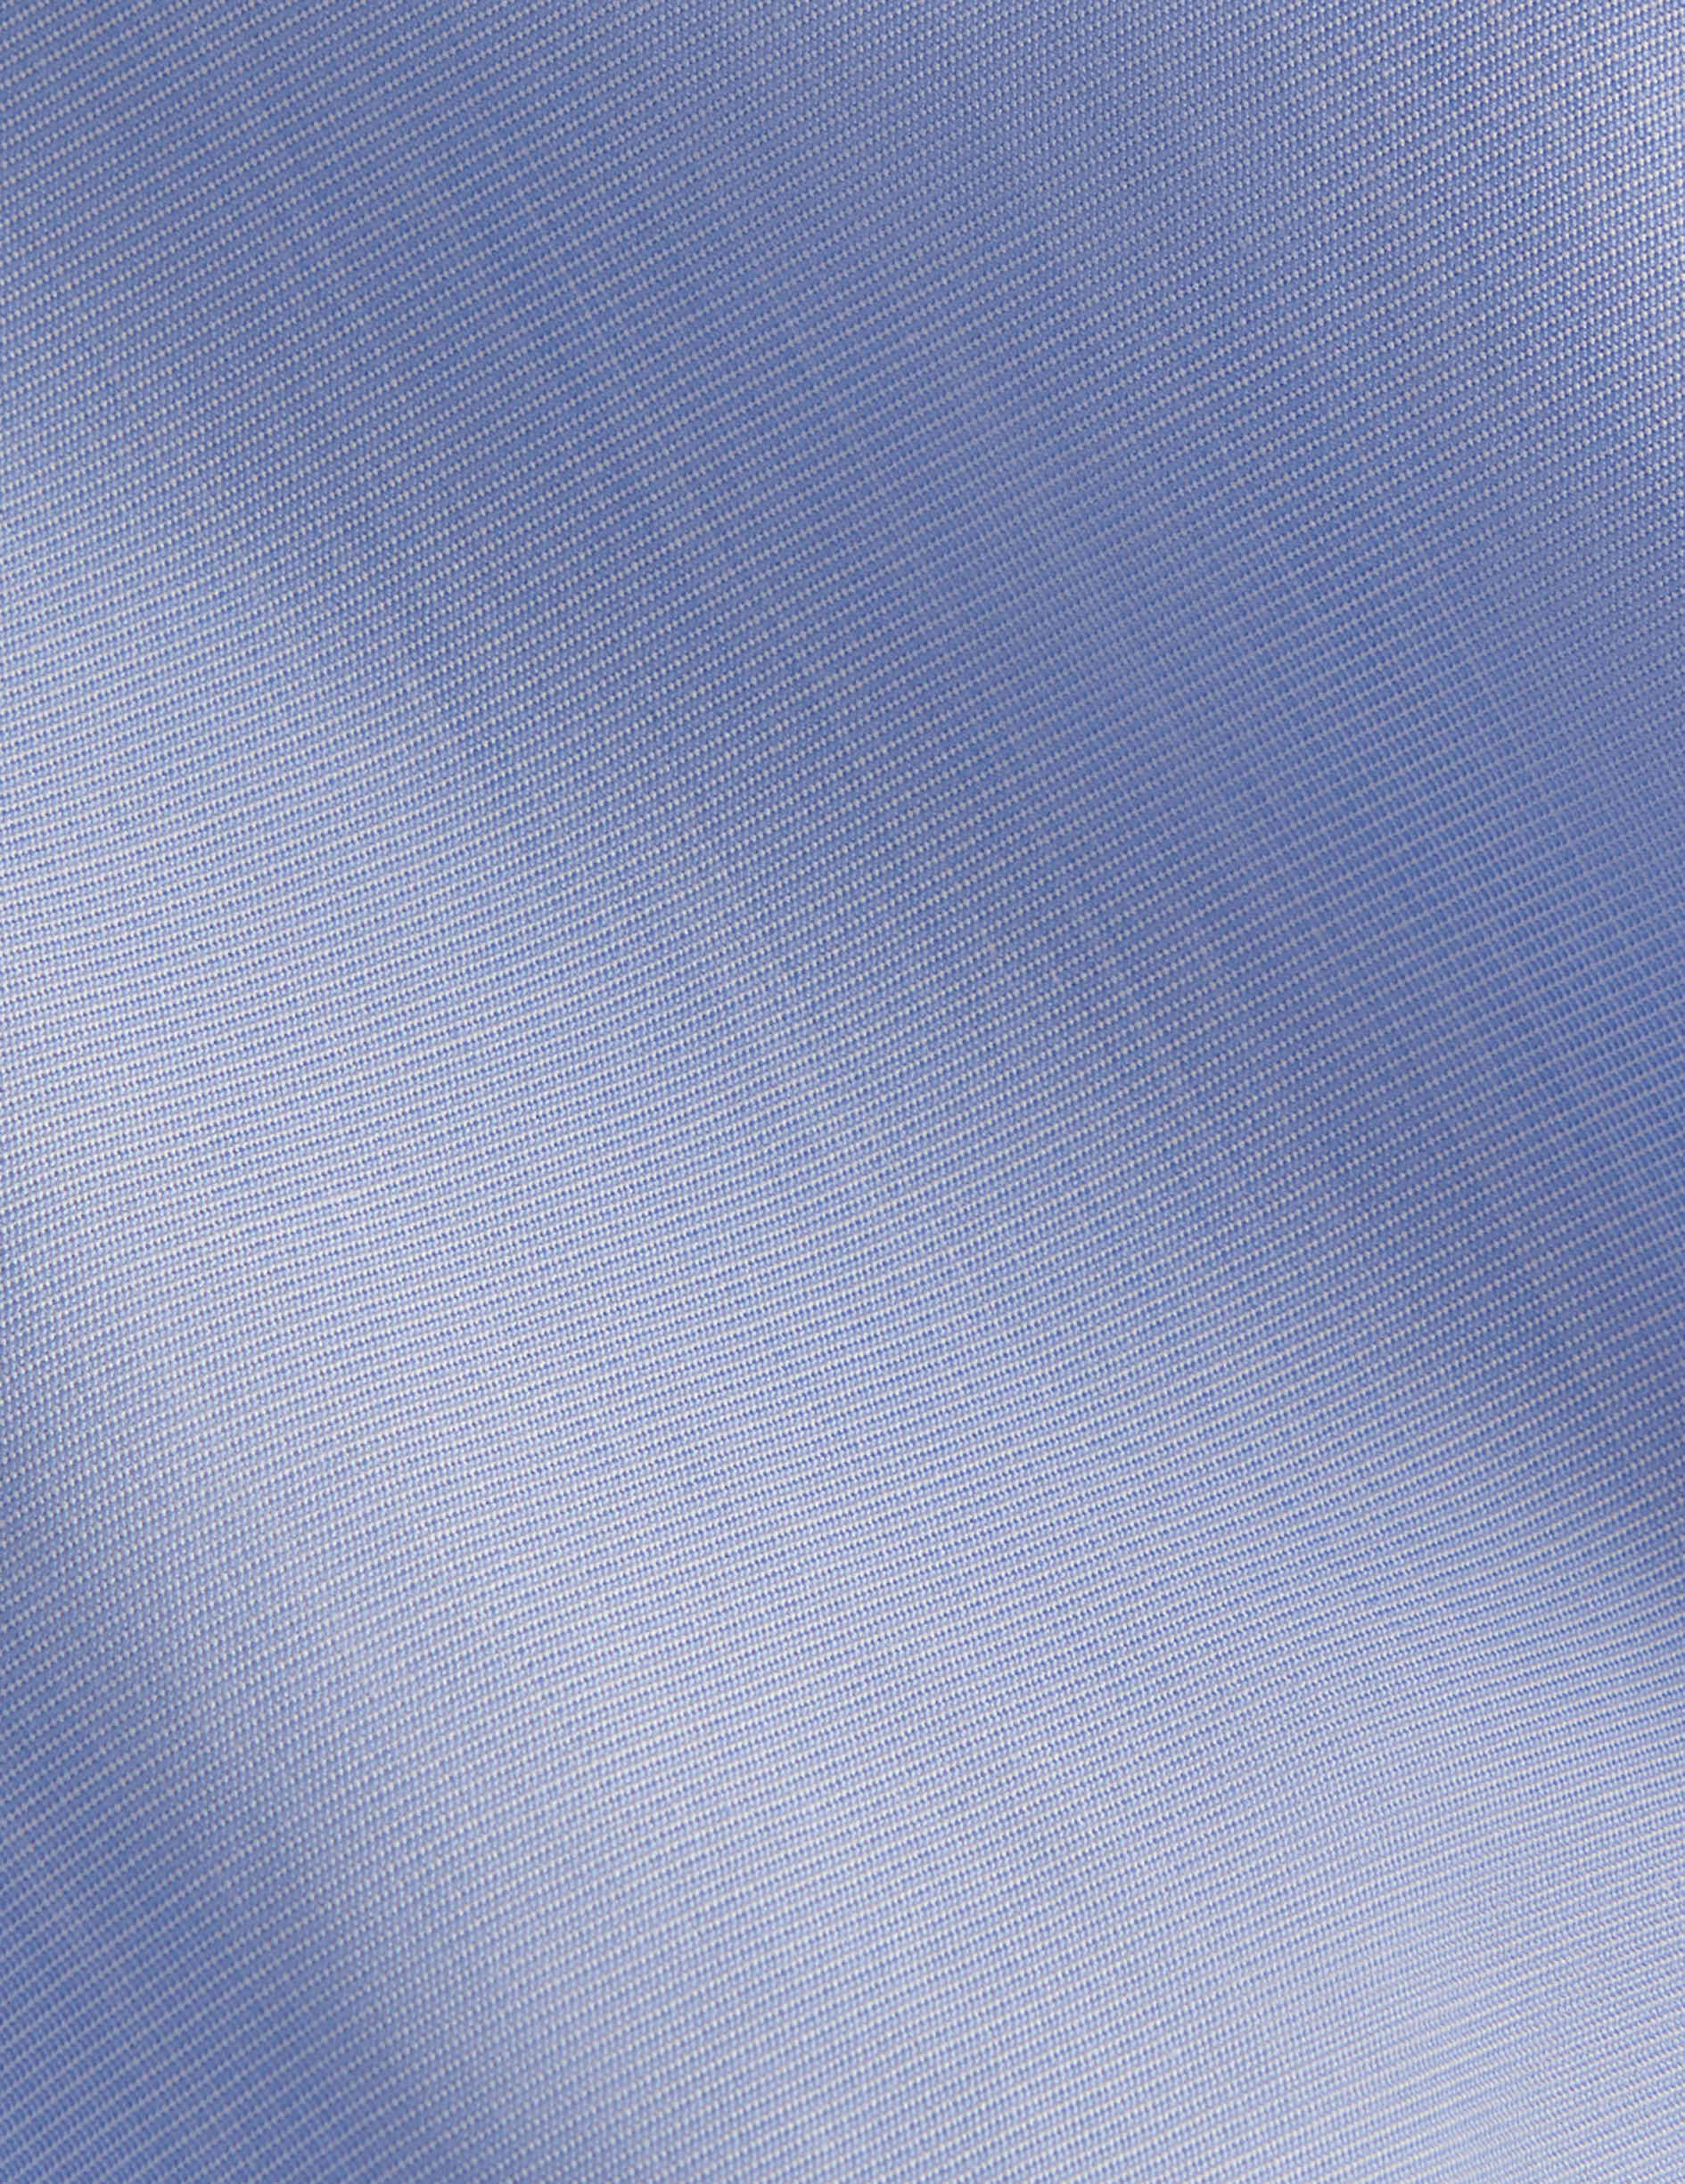 Chemise Semi-ajustée Infroissable bleue - Fil-à-fil - Col Figaret